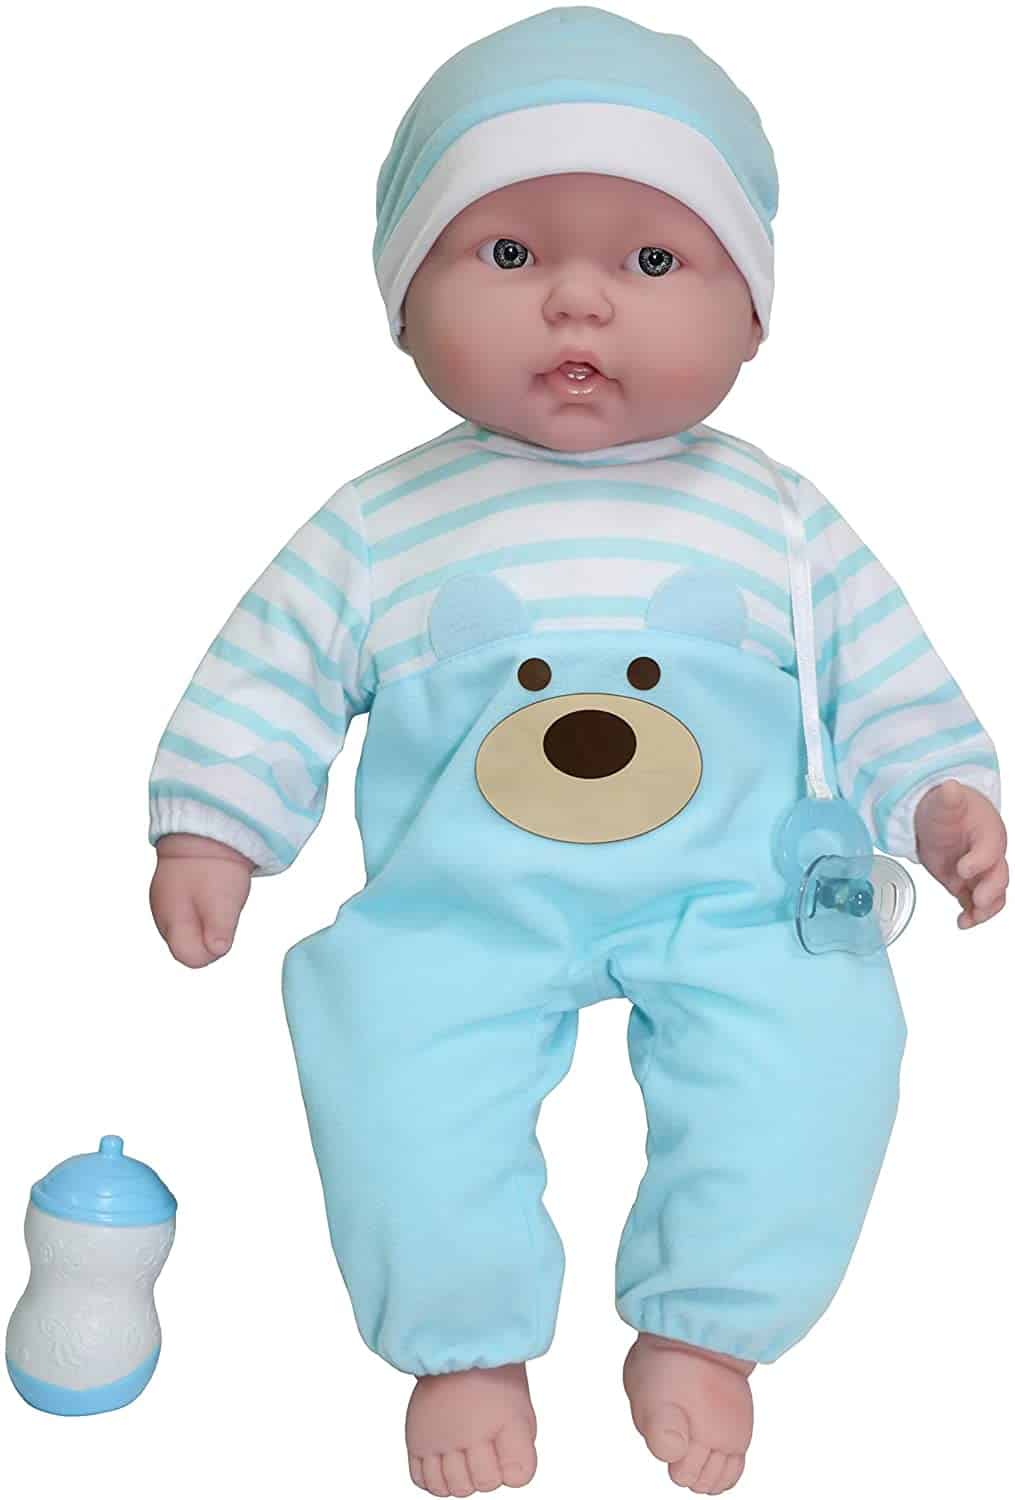 Beste babypop met stoffen lijf: JC Toys Berenguer soft body